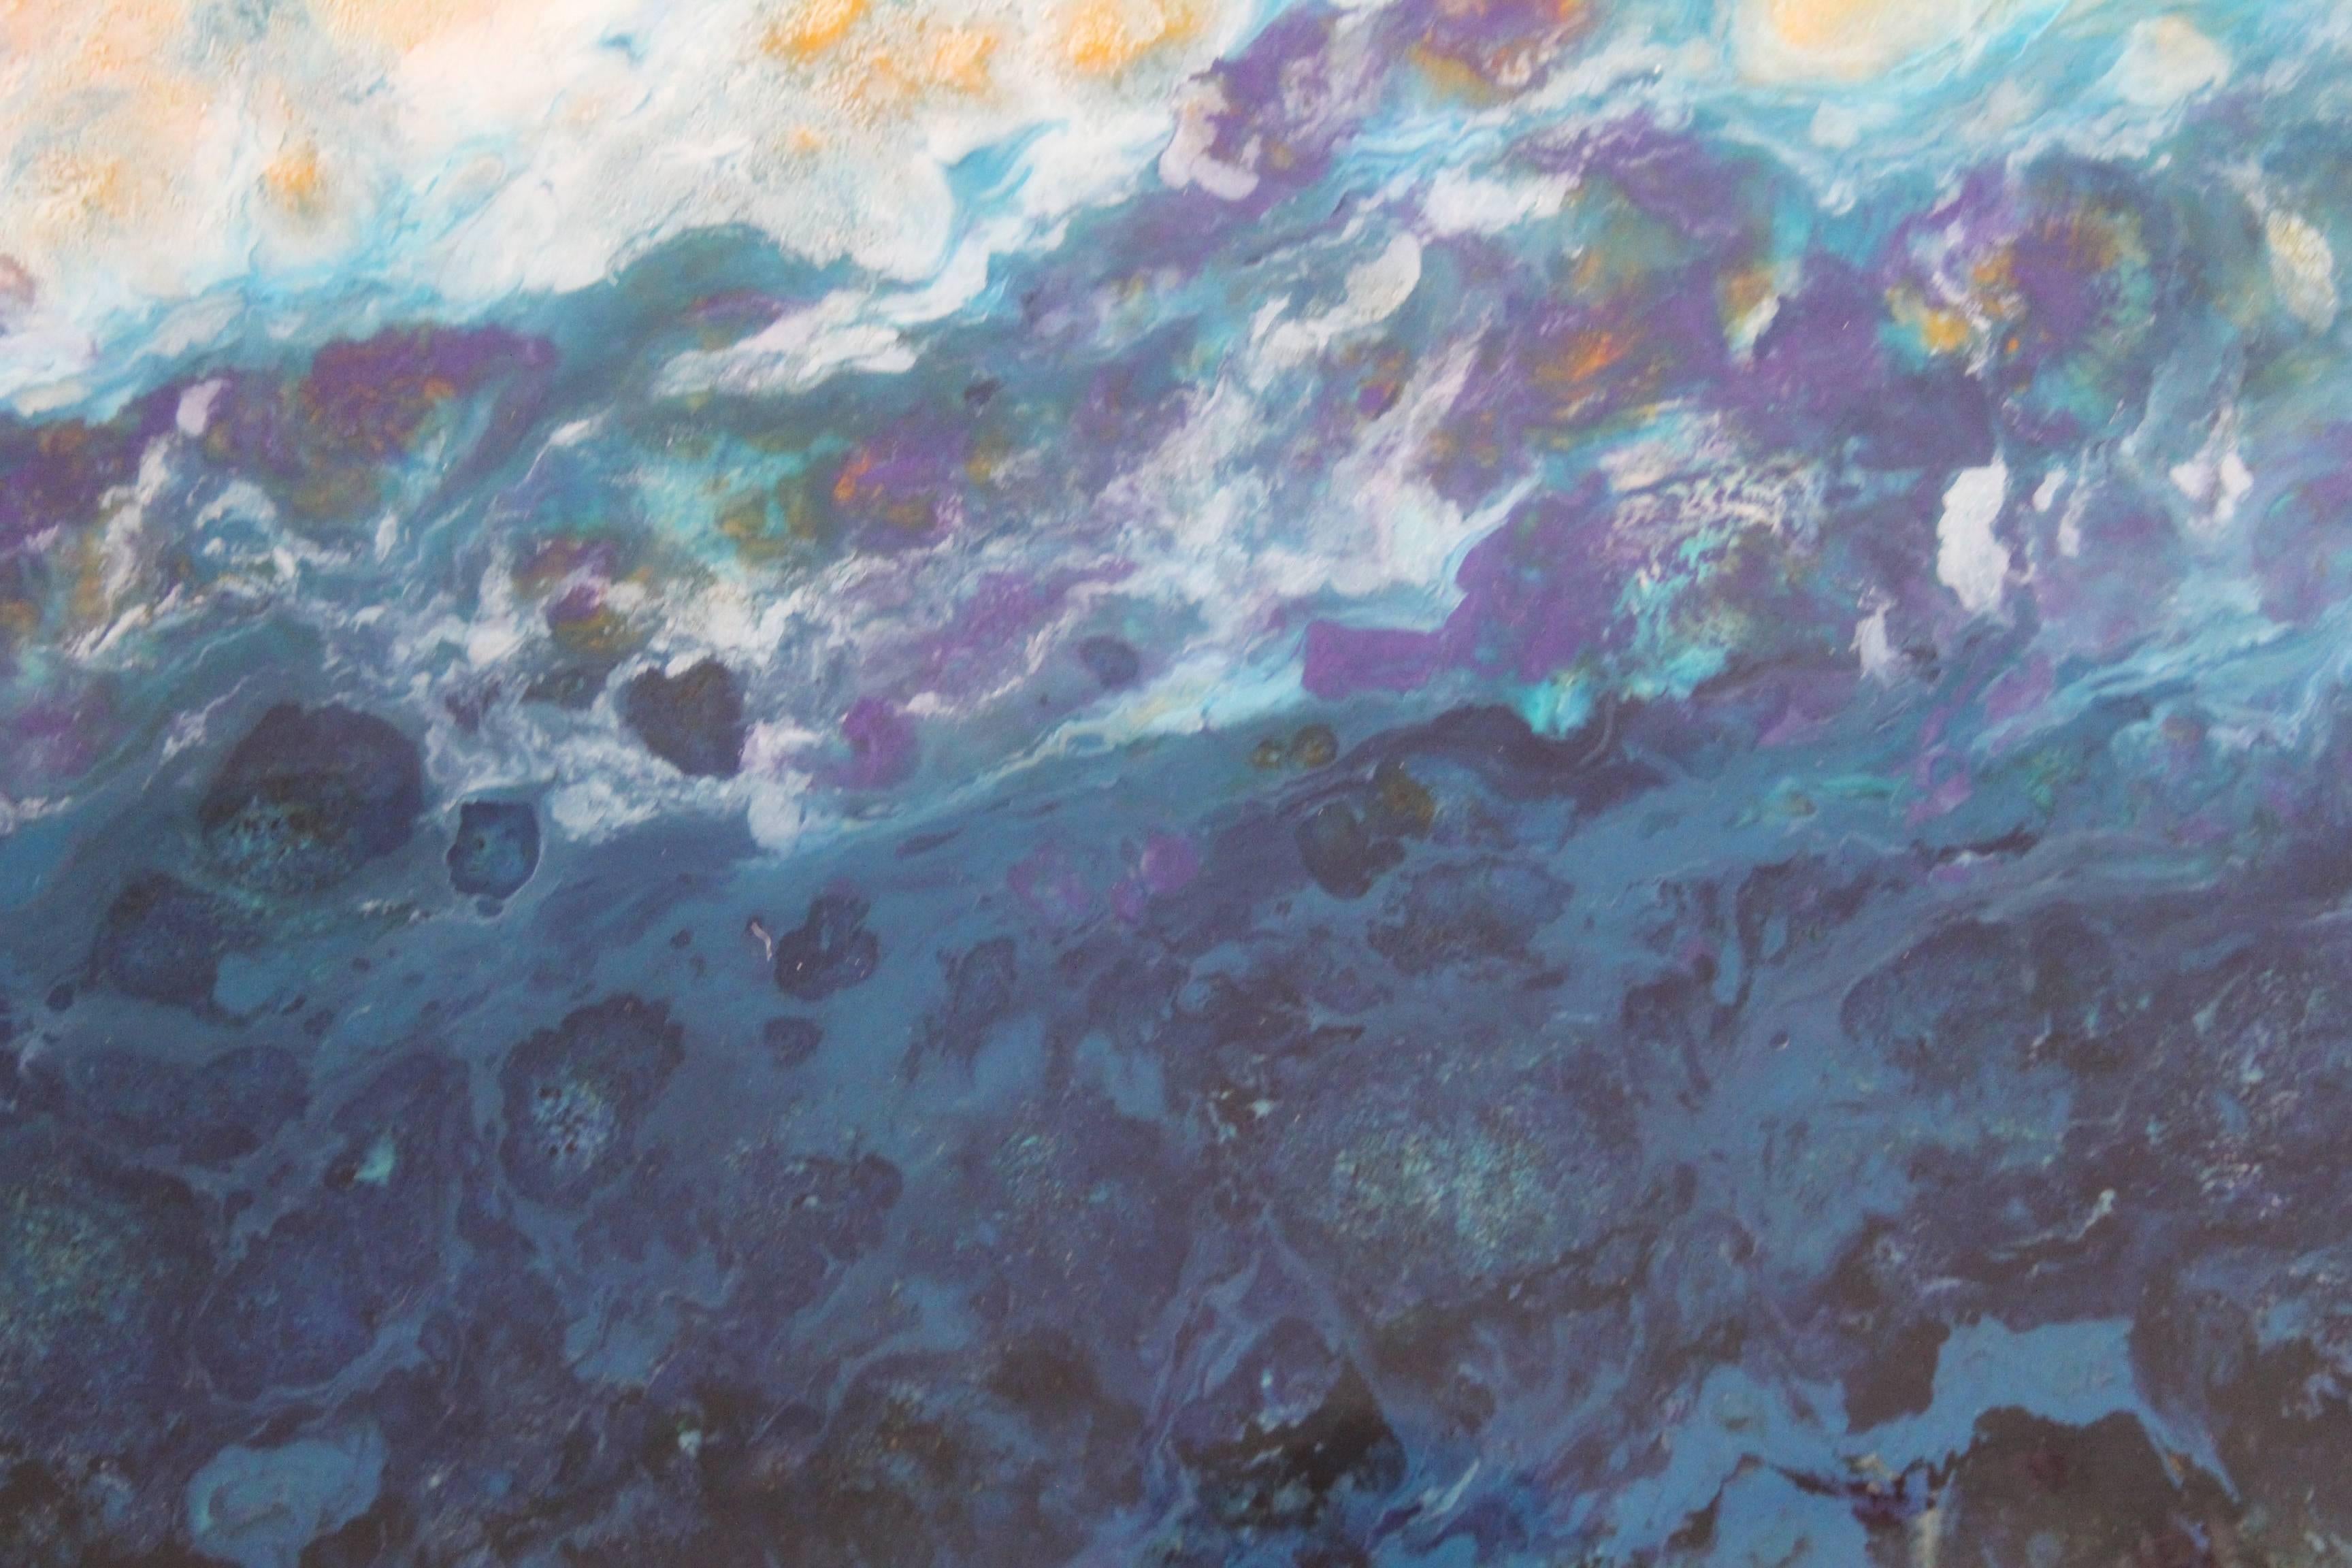 Lac Trouser est une peinture mixte colorée.  Il s'agit d'une peinture à l'huile et aux pigments sur panneau de bois avec une finition très brillante.  Ce diptyque mesure 20x40.  Il est rempli de magnifiques roses, blancs et bleus.

L'artiste